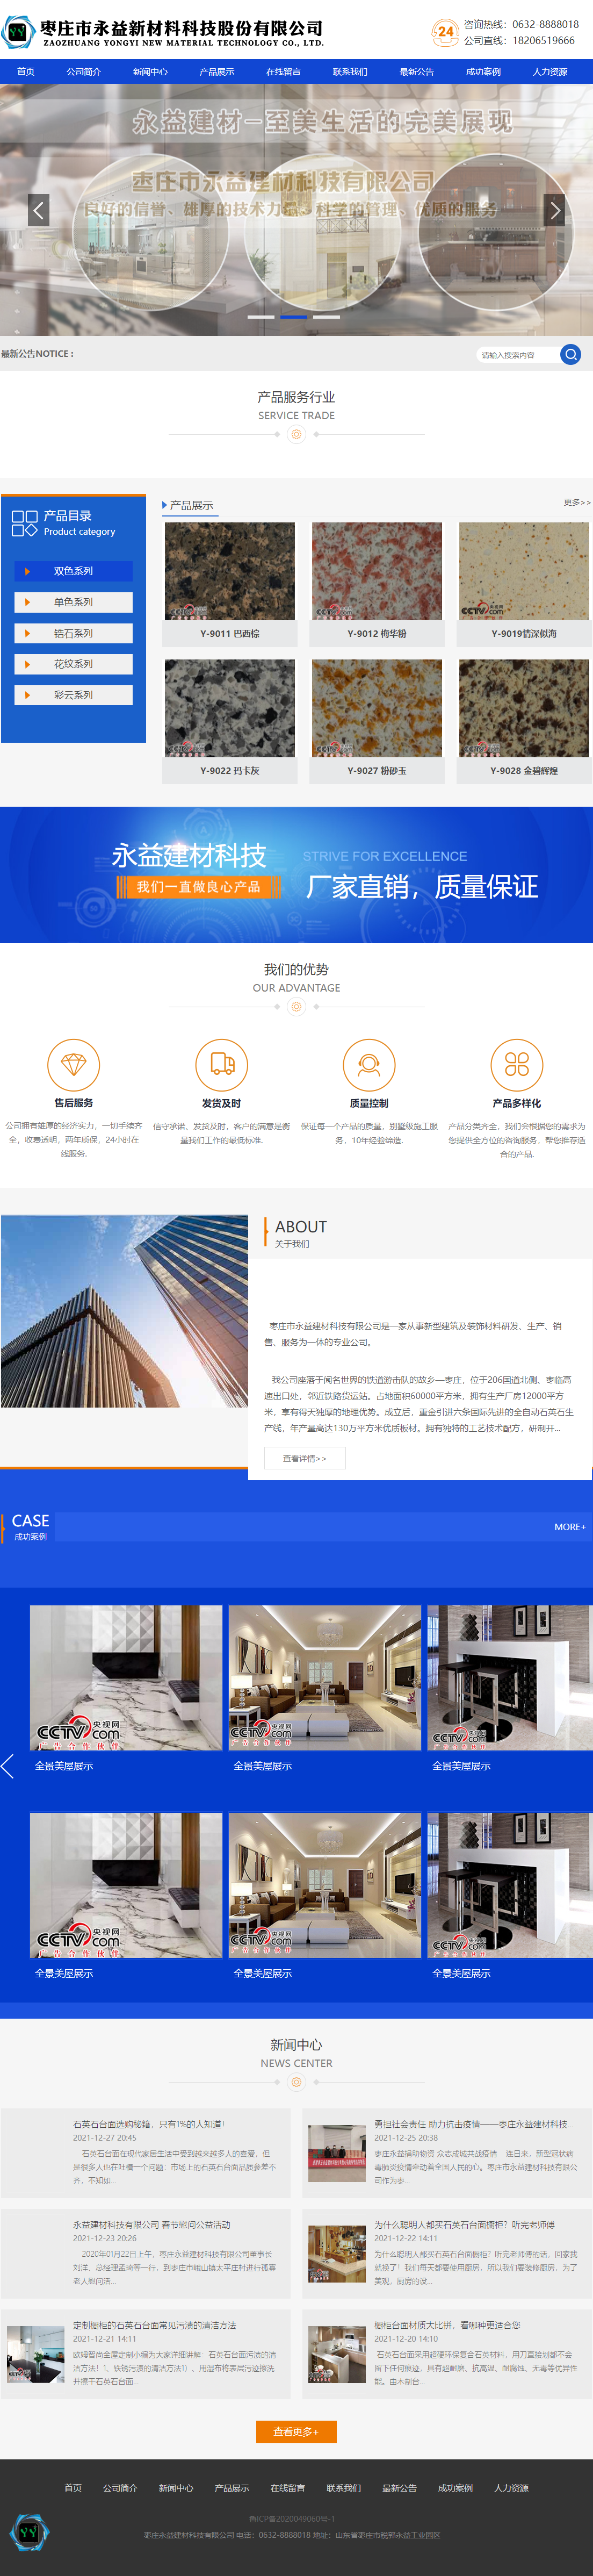 枣庄市永益新材料科技股份有限公司网站案例